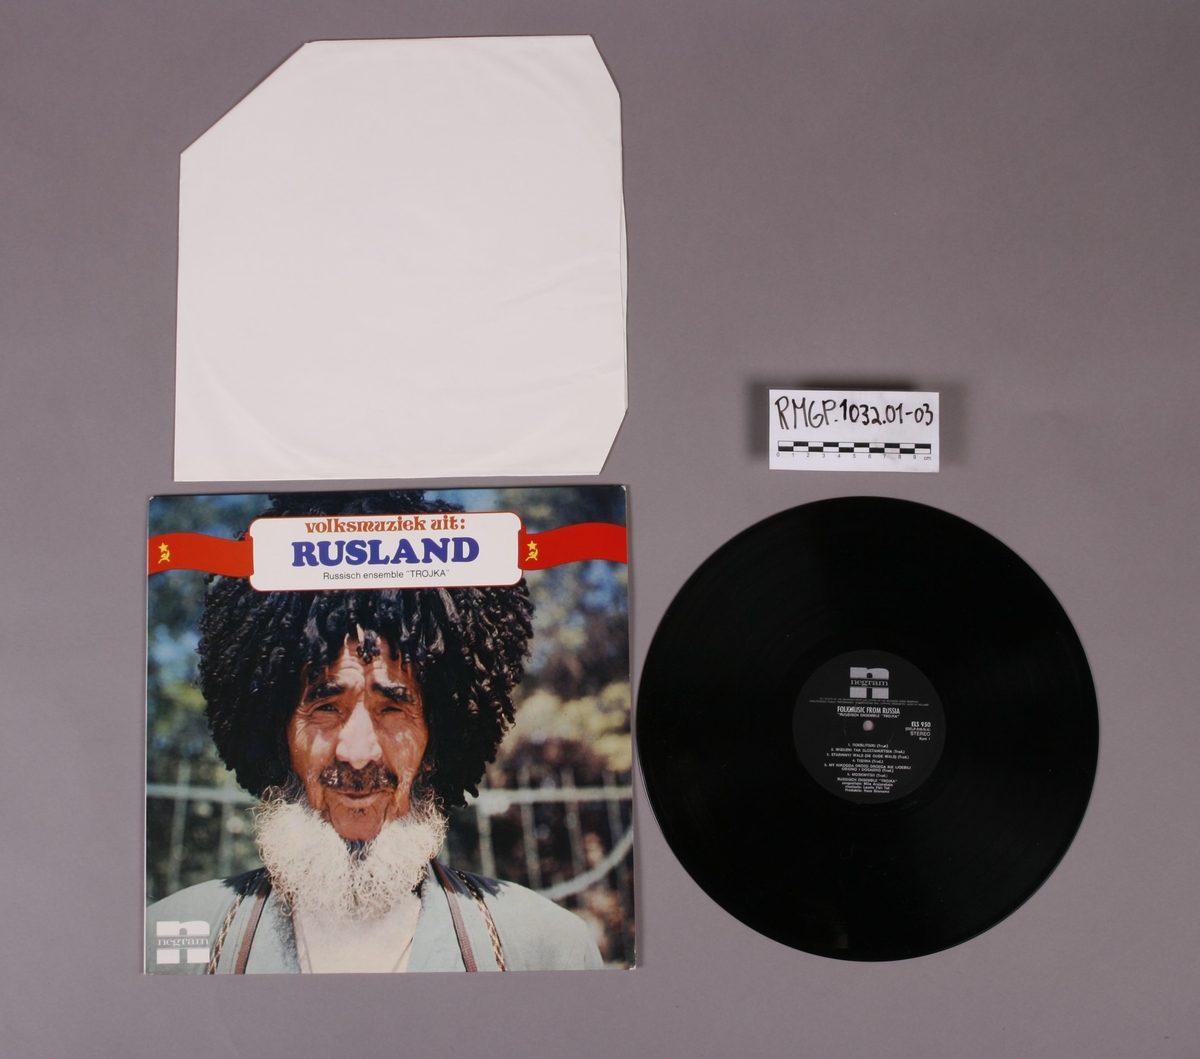 Grammofonplate i svart vinyl og plateomslag i papp. Platen tilhører serien "Volksmuziek Uit". Plata ligger i en papirlomme.